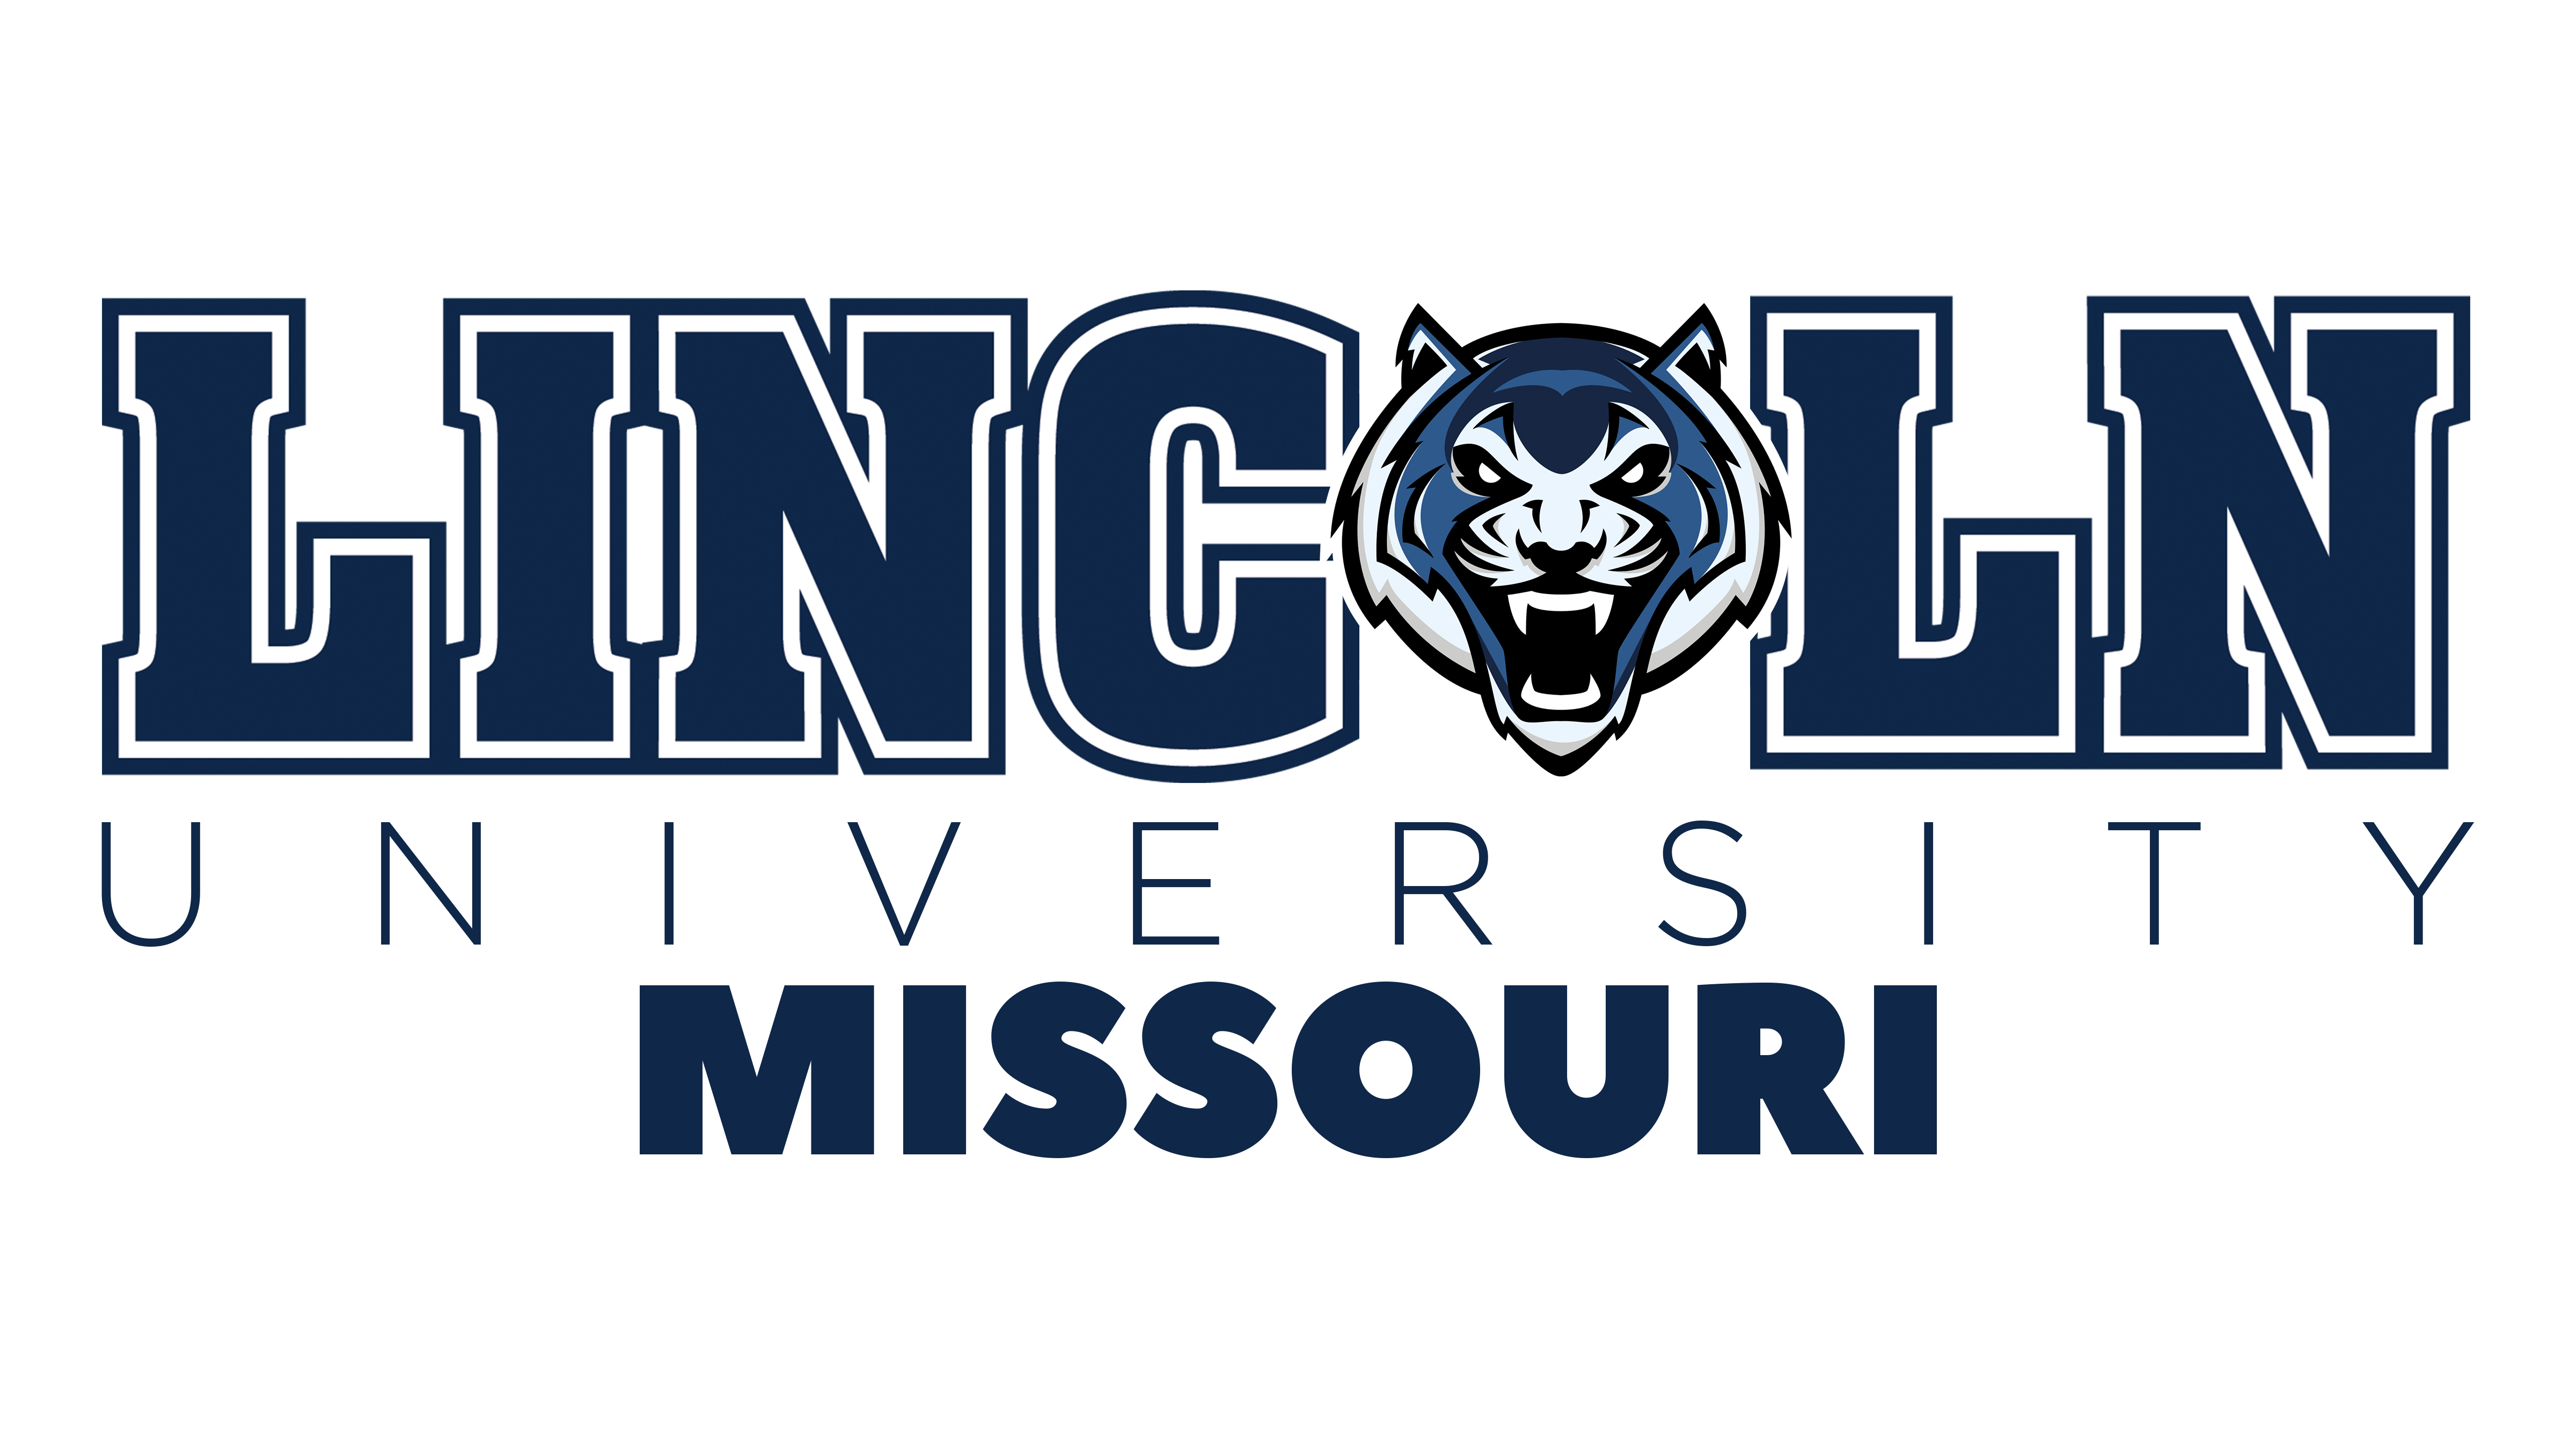 blue tiger logo